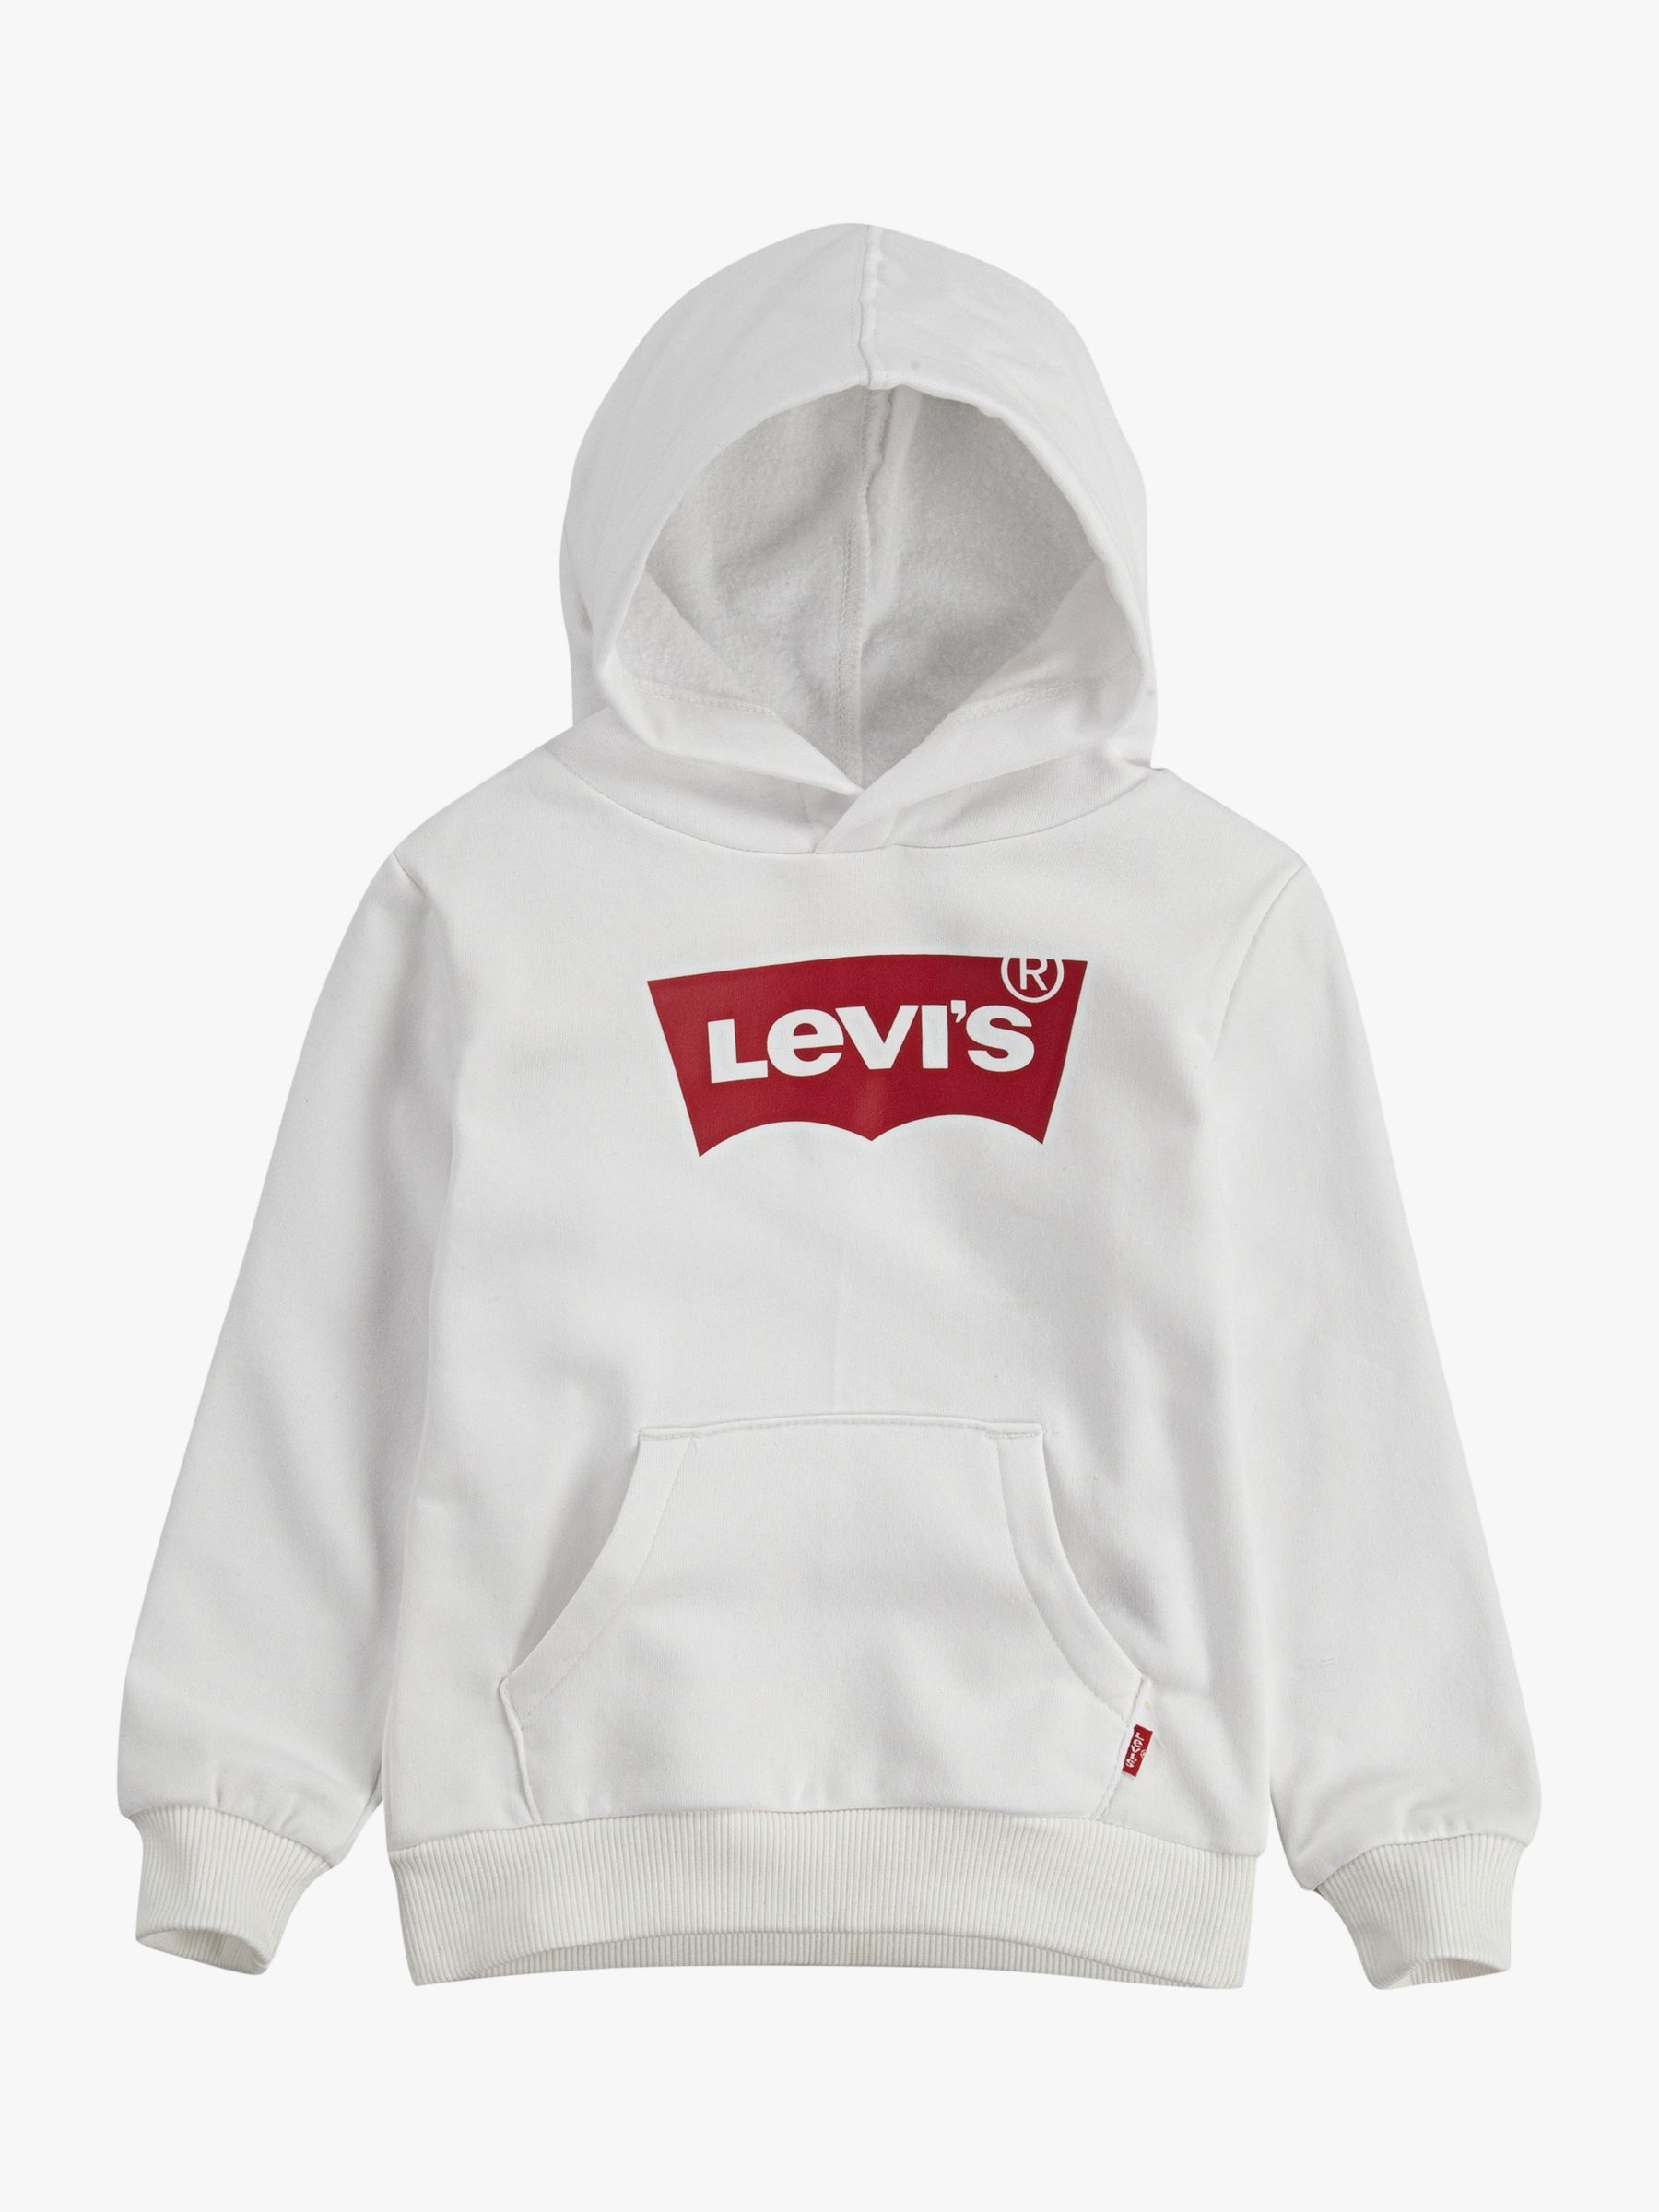 Levi's Kids' Logo Hoodie, White at John Lewis & Partners